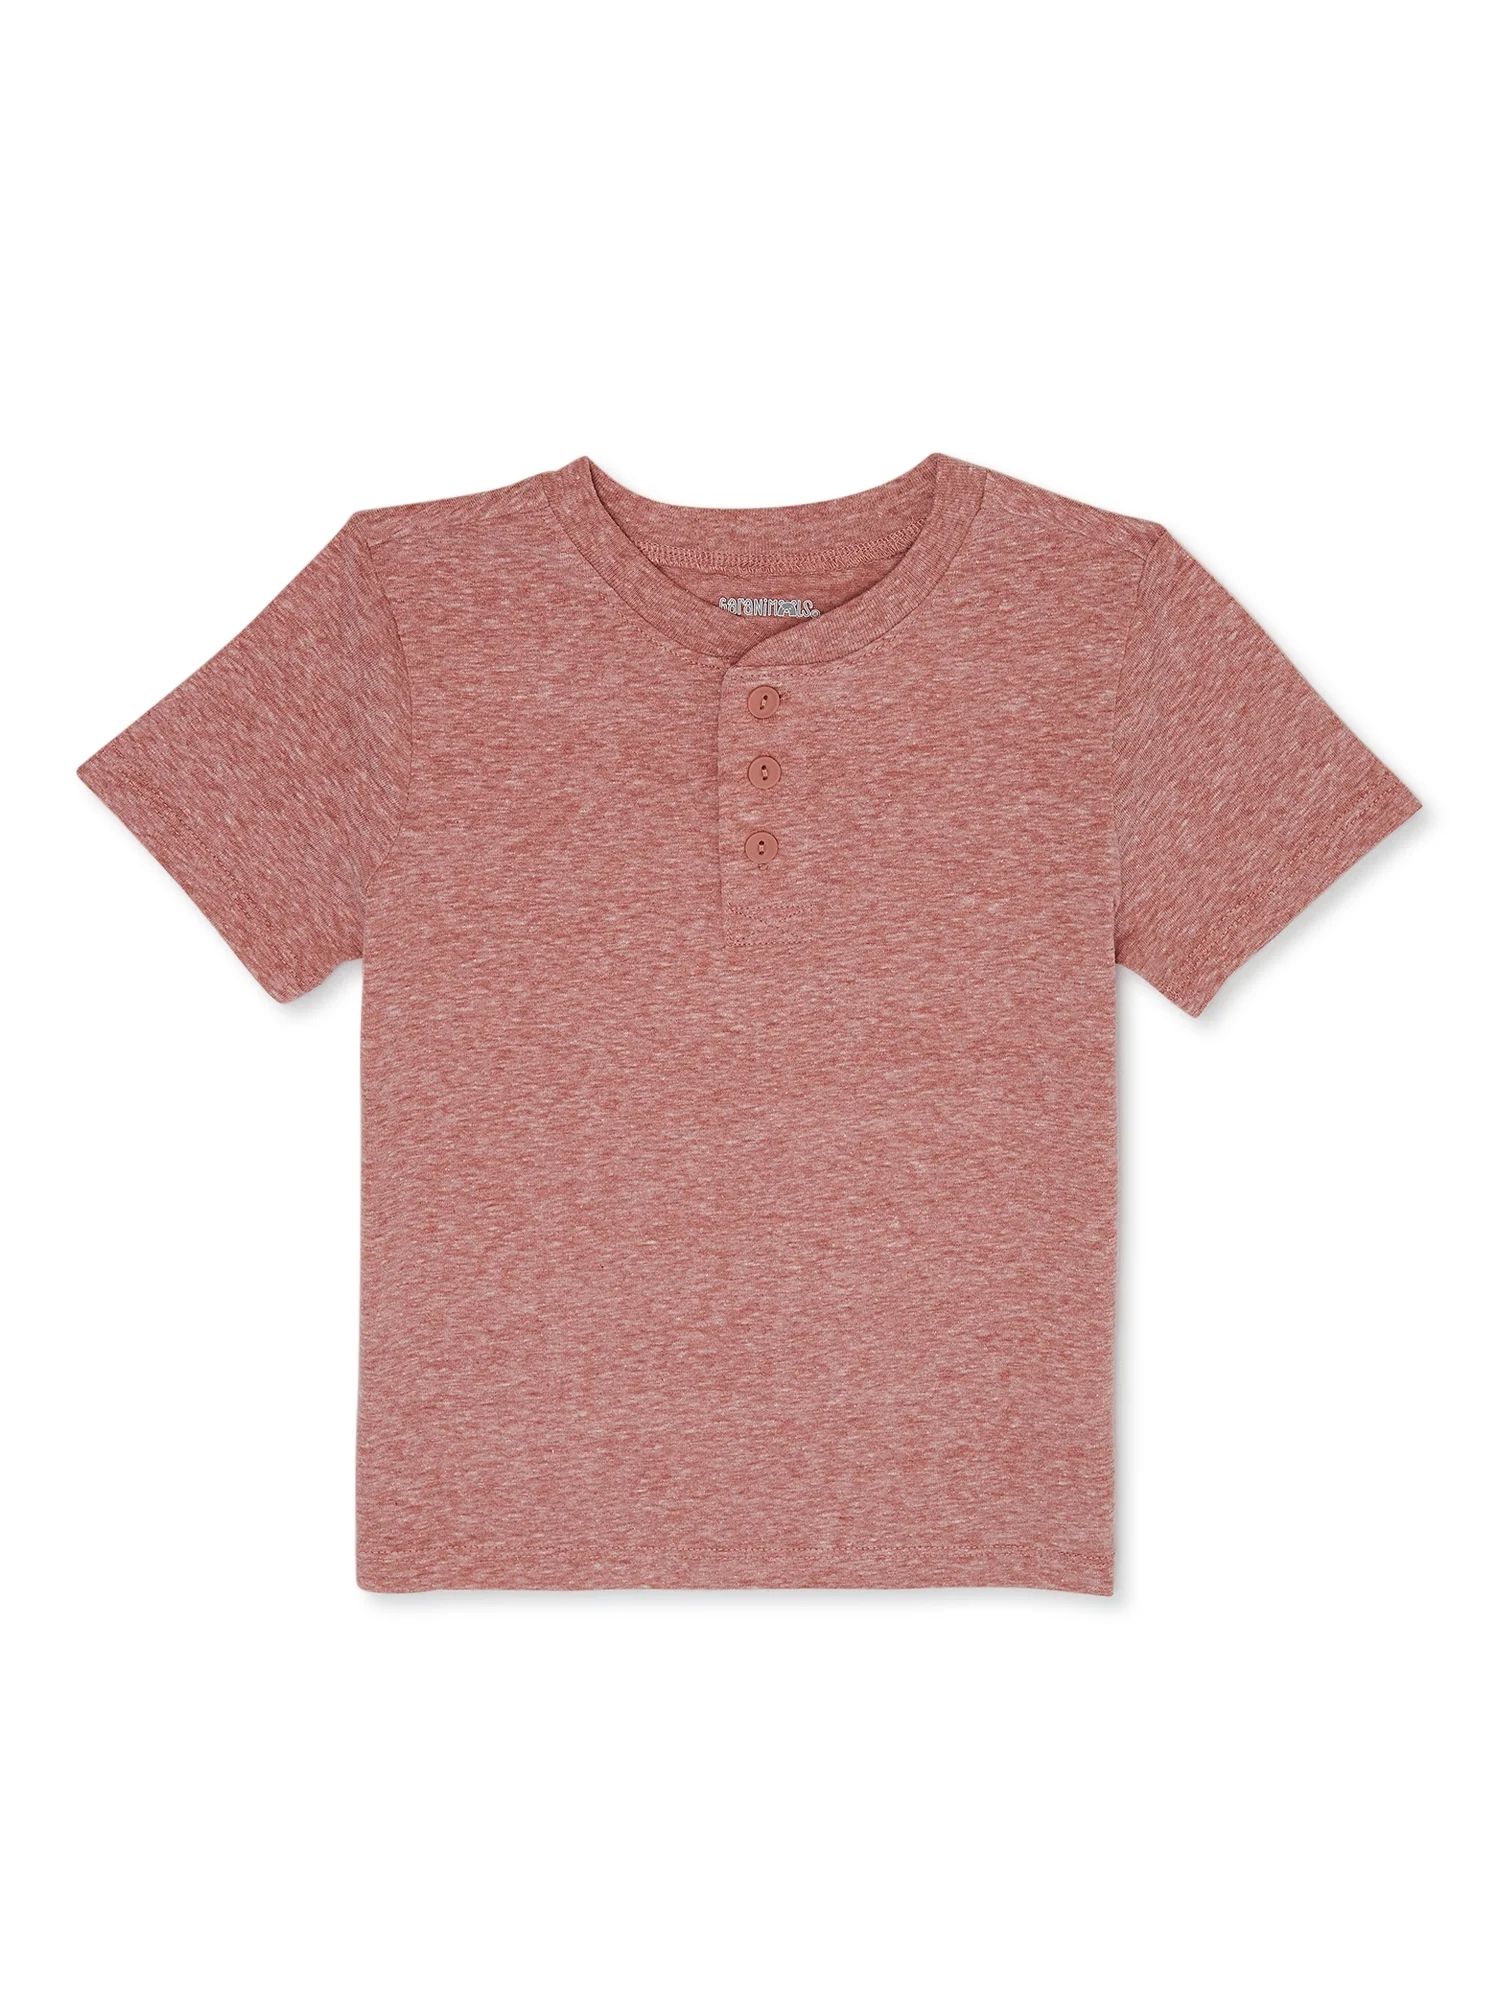 Garanimals Toddler Boy Short Sleeve Henley T-Shirt, Sizes 18M-5T - Walmart.com | Walmart (US)